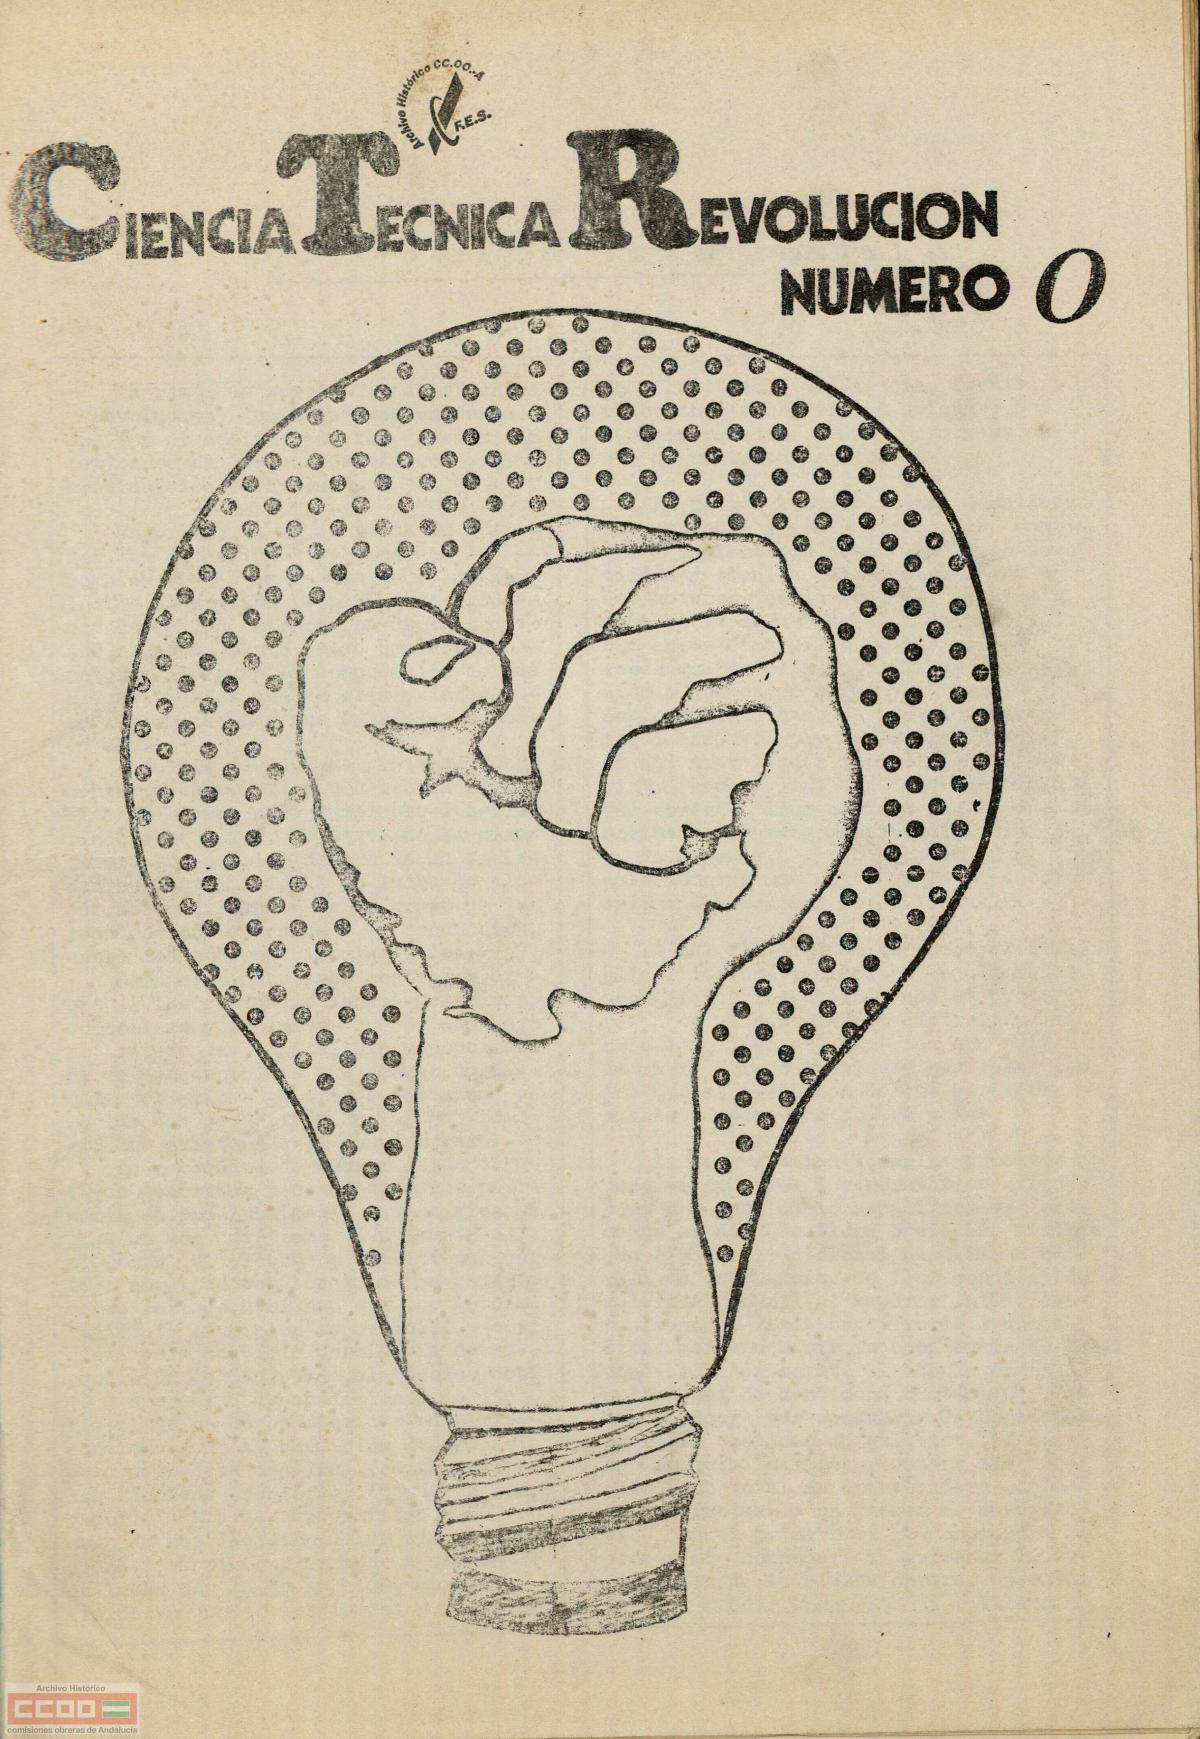 Nmero 0, de 1971, de la revista "Ciencia, Tcnica y Revolucin" editada por las Comisiones Obreras para todo el pas. Archivo Histrico de CCOO de Andaluca.